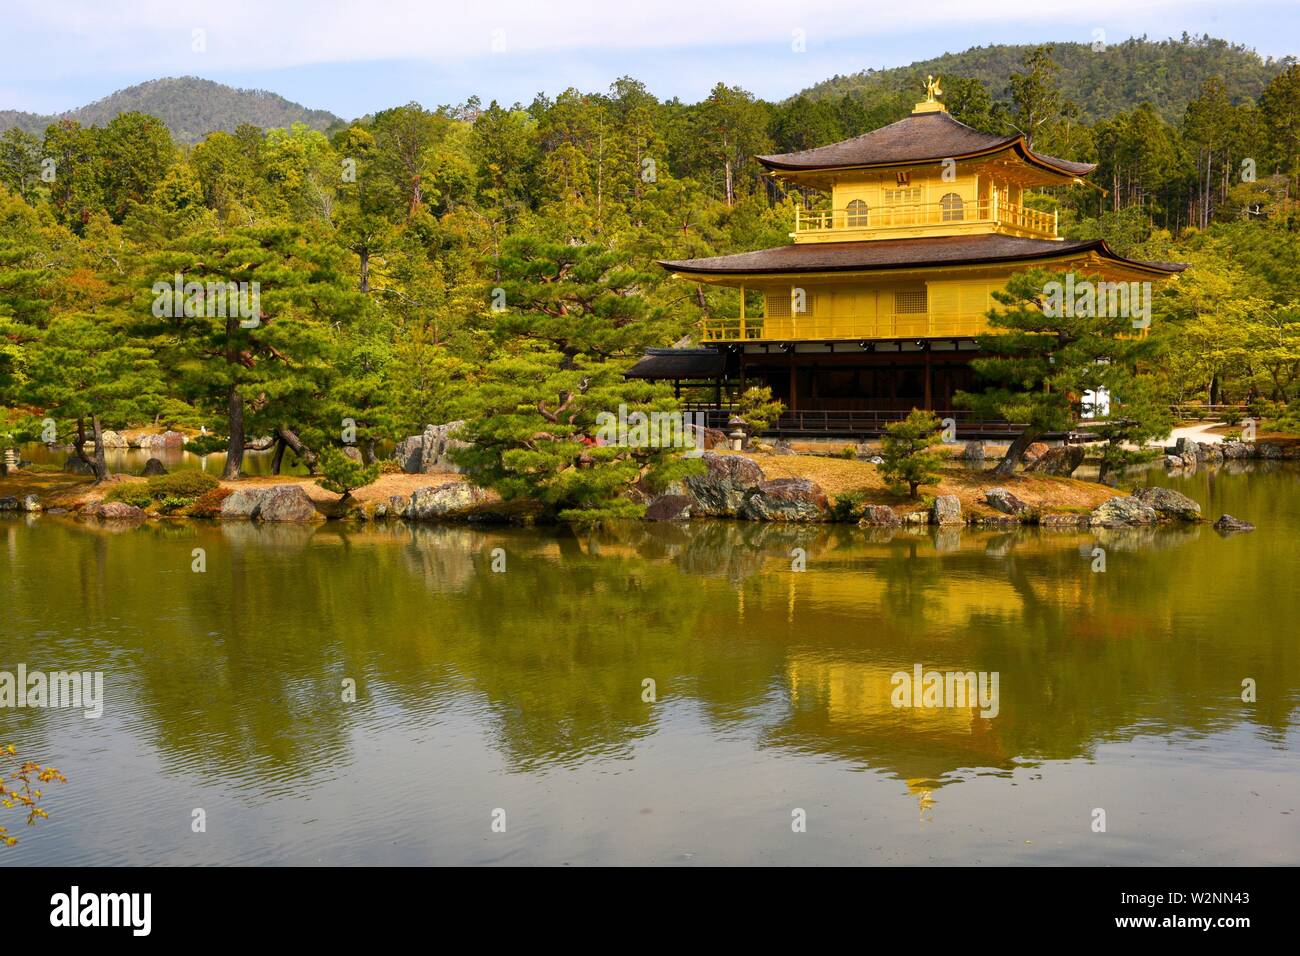 Kinkaku-ji il tempio del Padiglione Dorato, è famoso Zen tempio Buddista situato a Kyoto, Giappone, Asia. Foto Stock